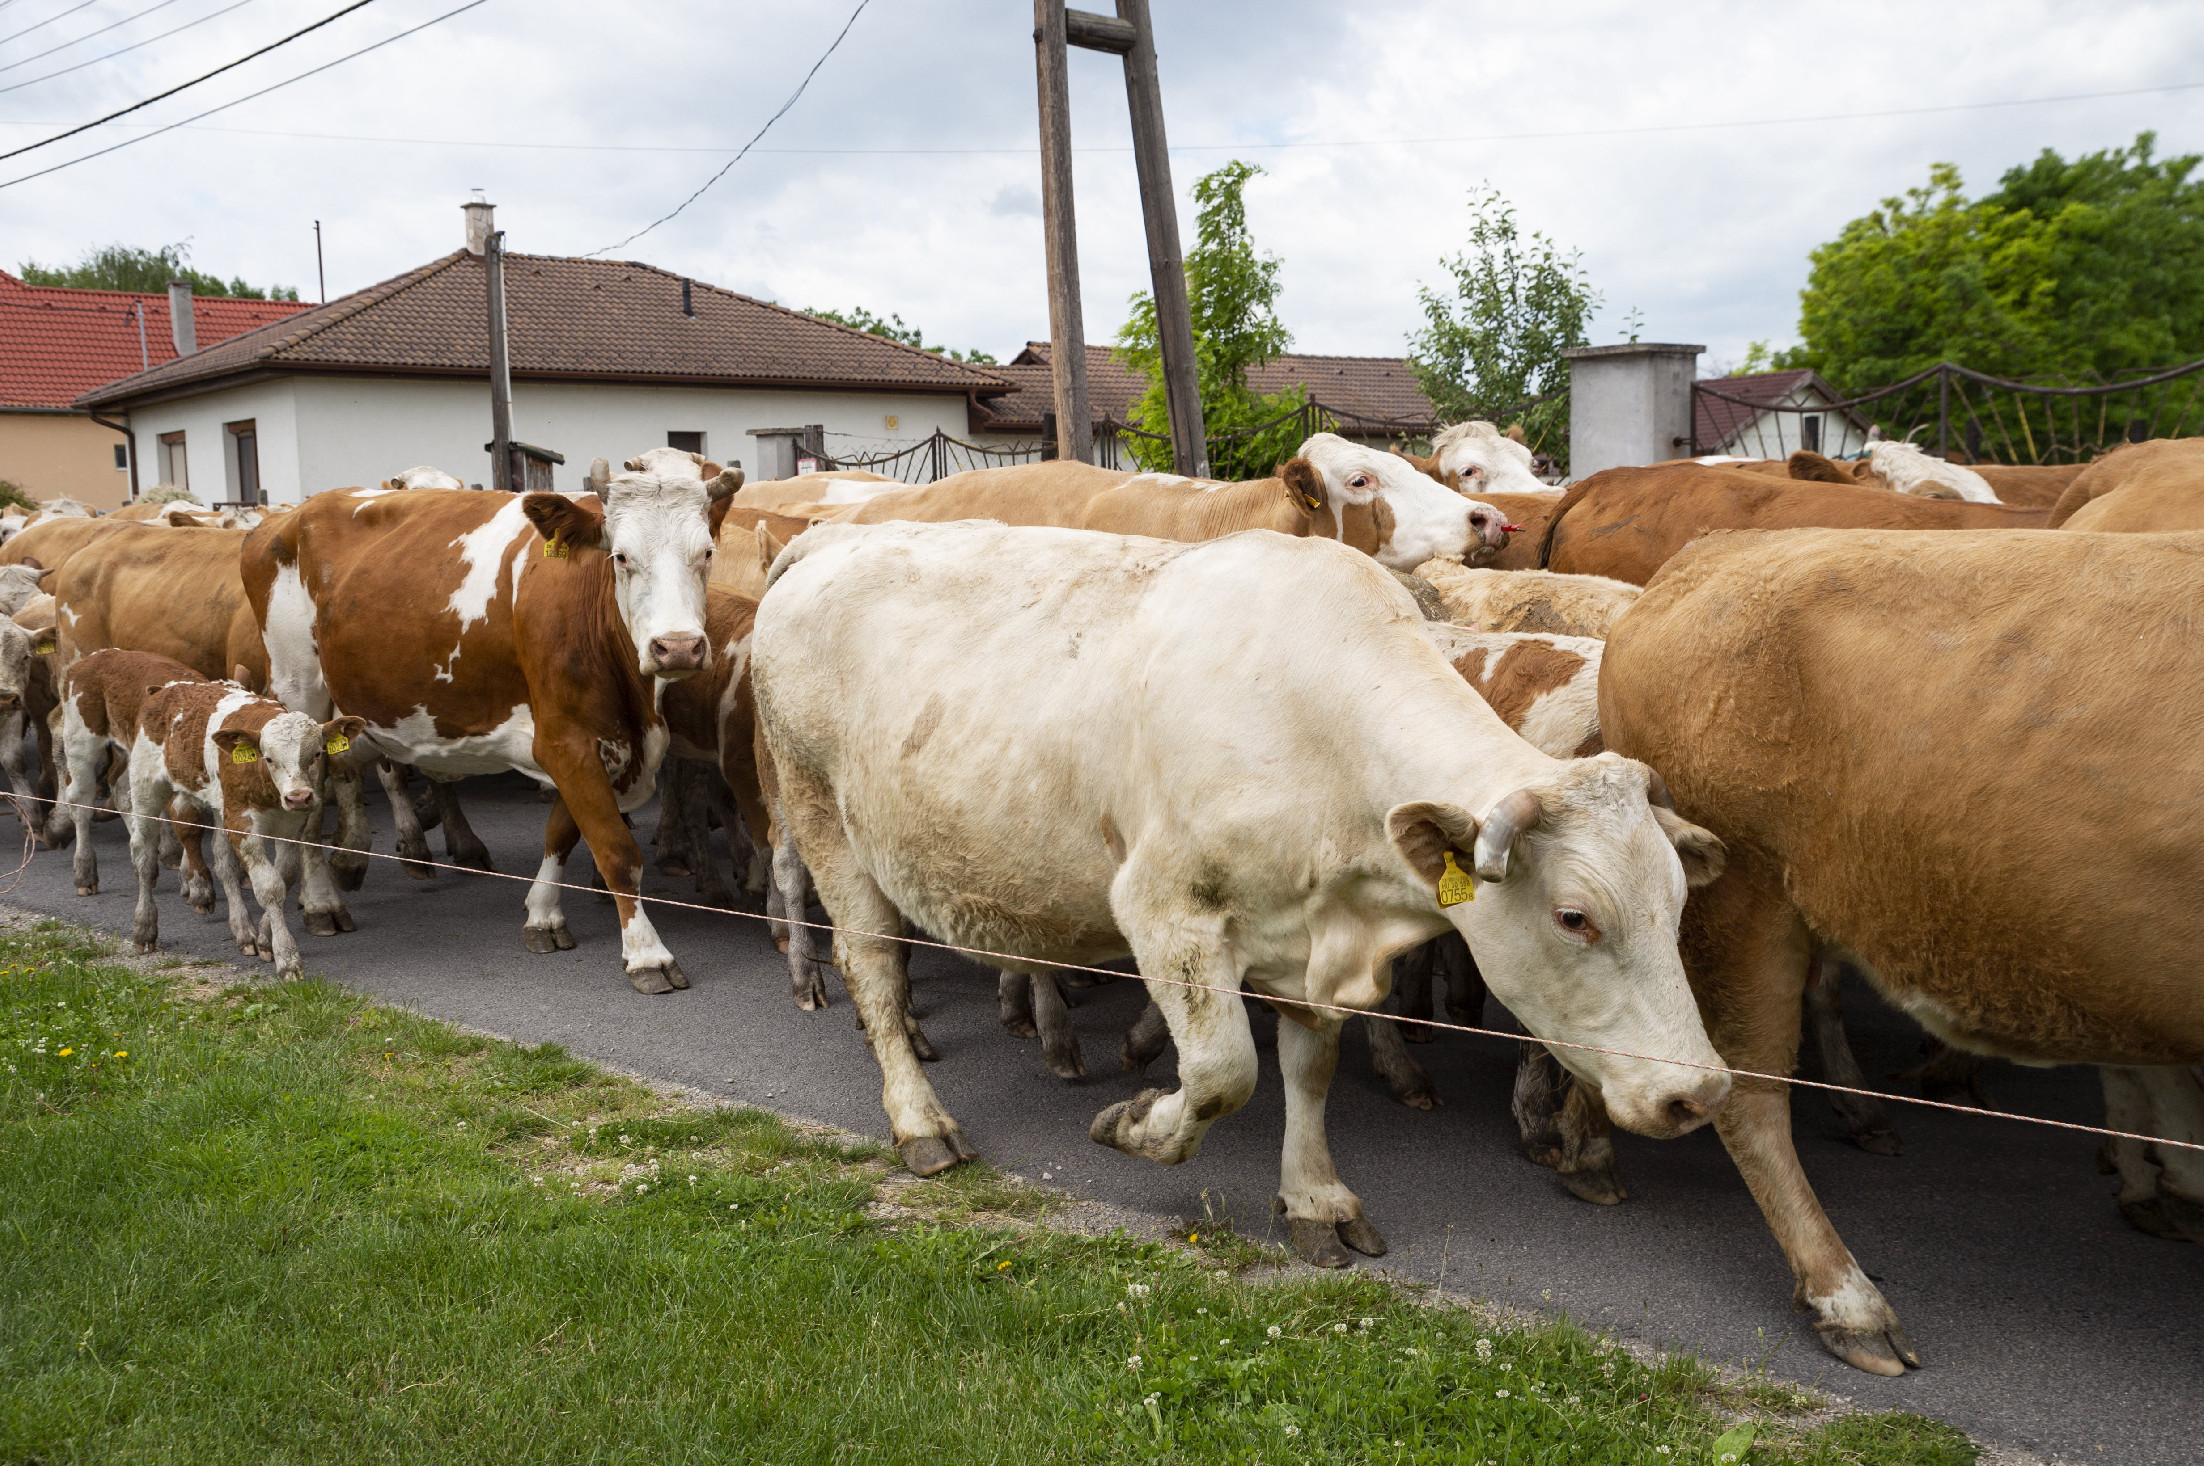 41 millió forintnyi szarvasmarhára lehet licitálni a NAV-nál